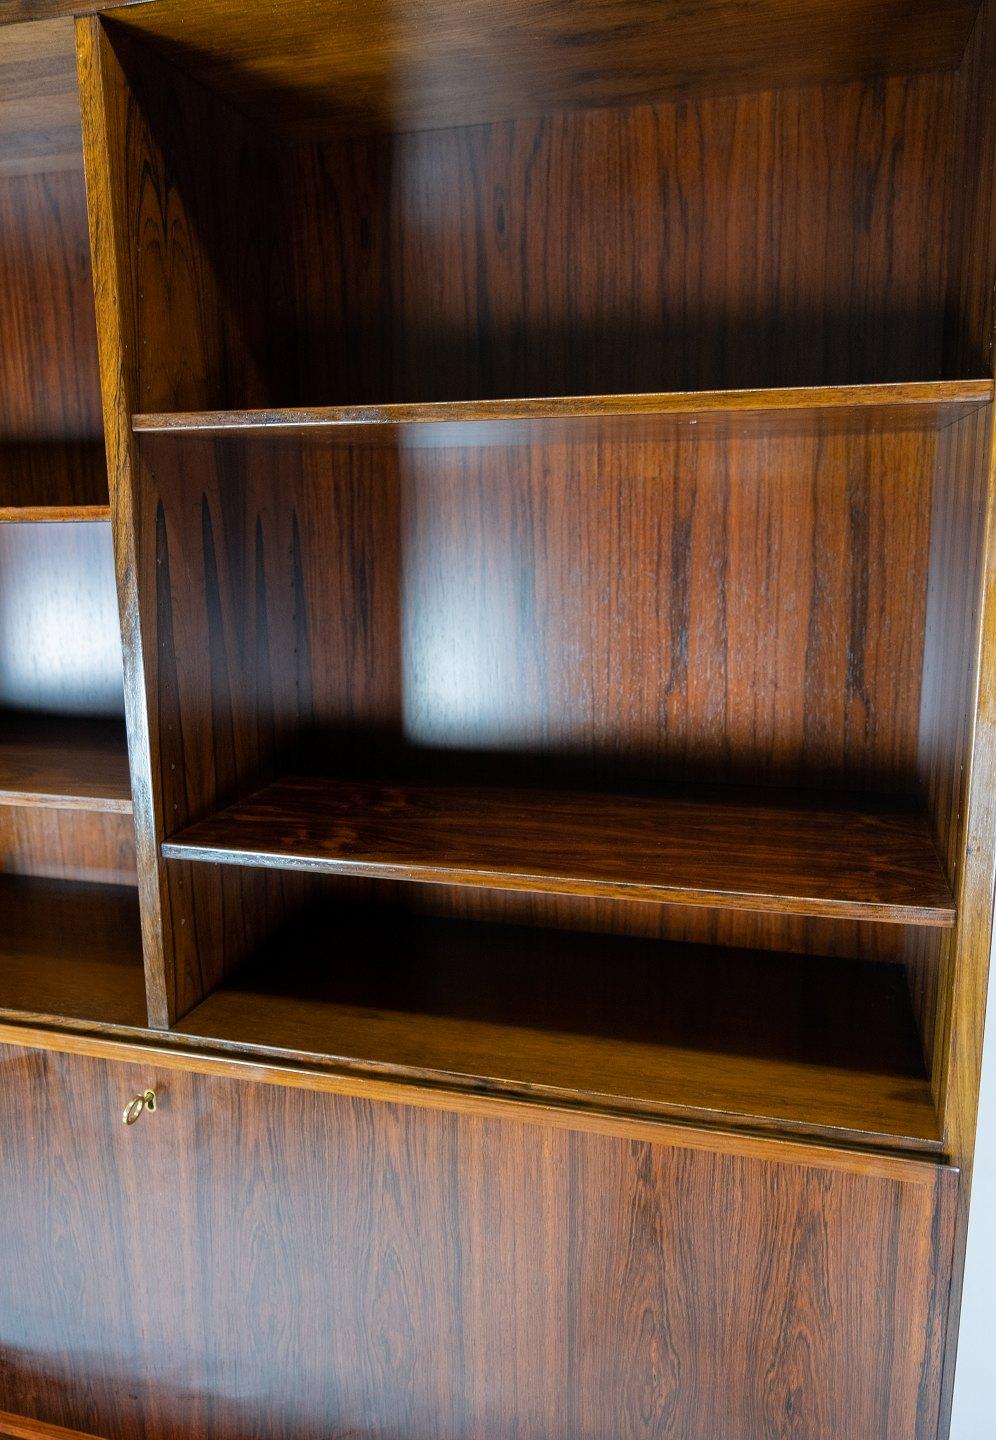 Holen Sie sich ein authentisches Stück dänischer Möbelgeschichte mit diesem schönen Bücherregal mit Sekretär aus Palisanderholz, Modell Nr. 9, entworfen von Omann Junior in den 1960er Jahren. Dieses Bücherregal ist ein hervorragendes Beispiel für